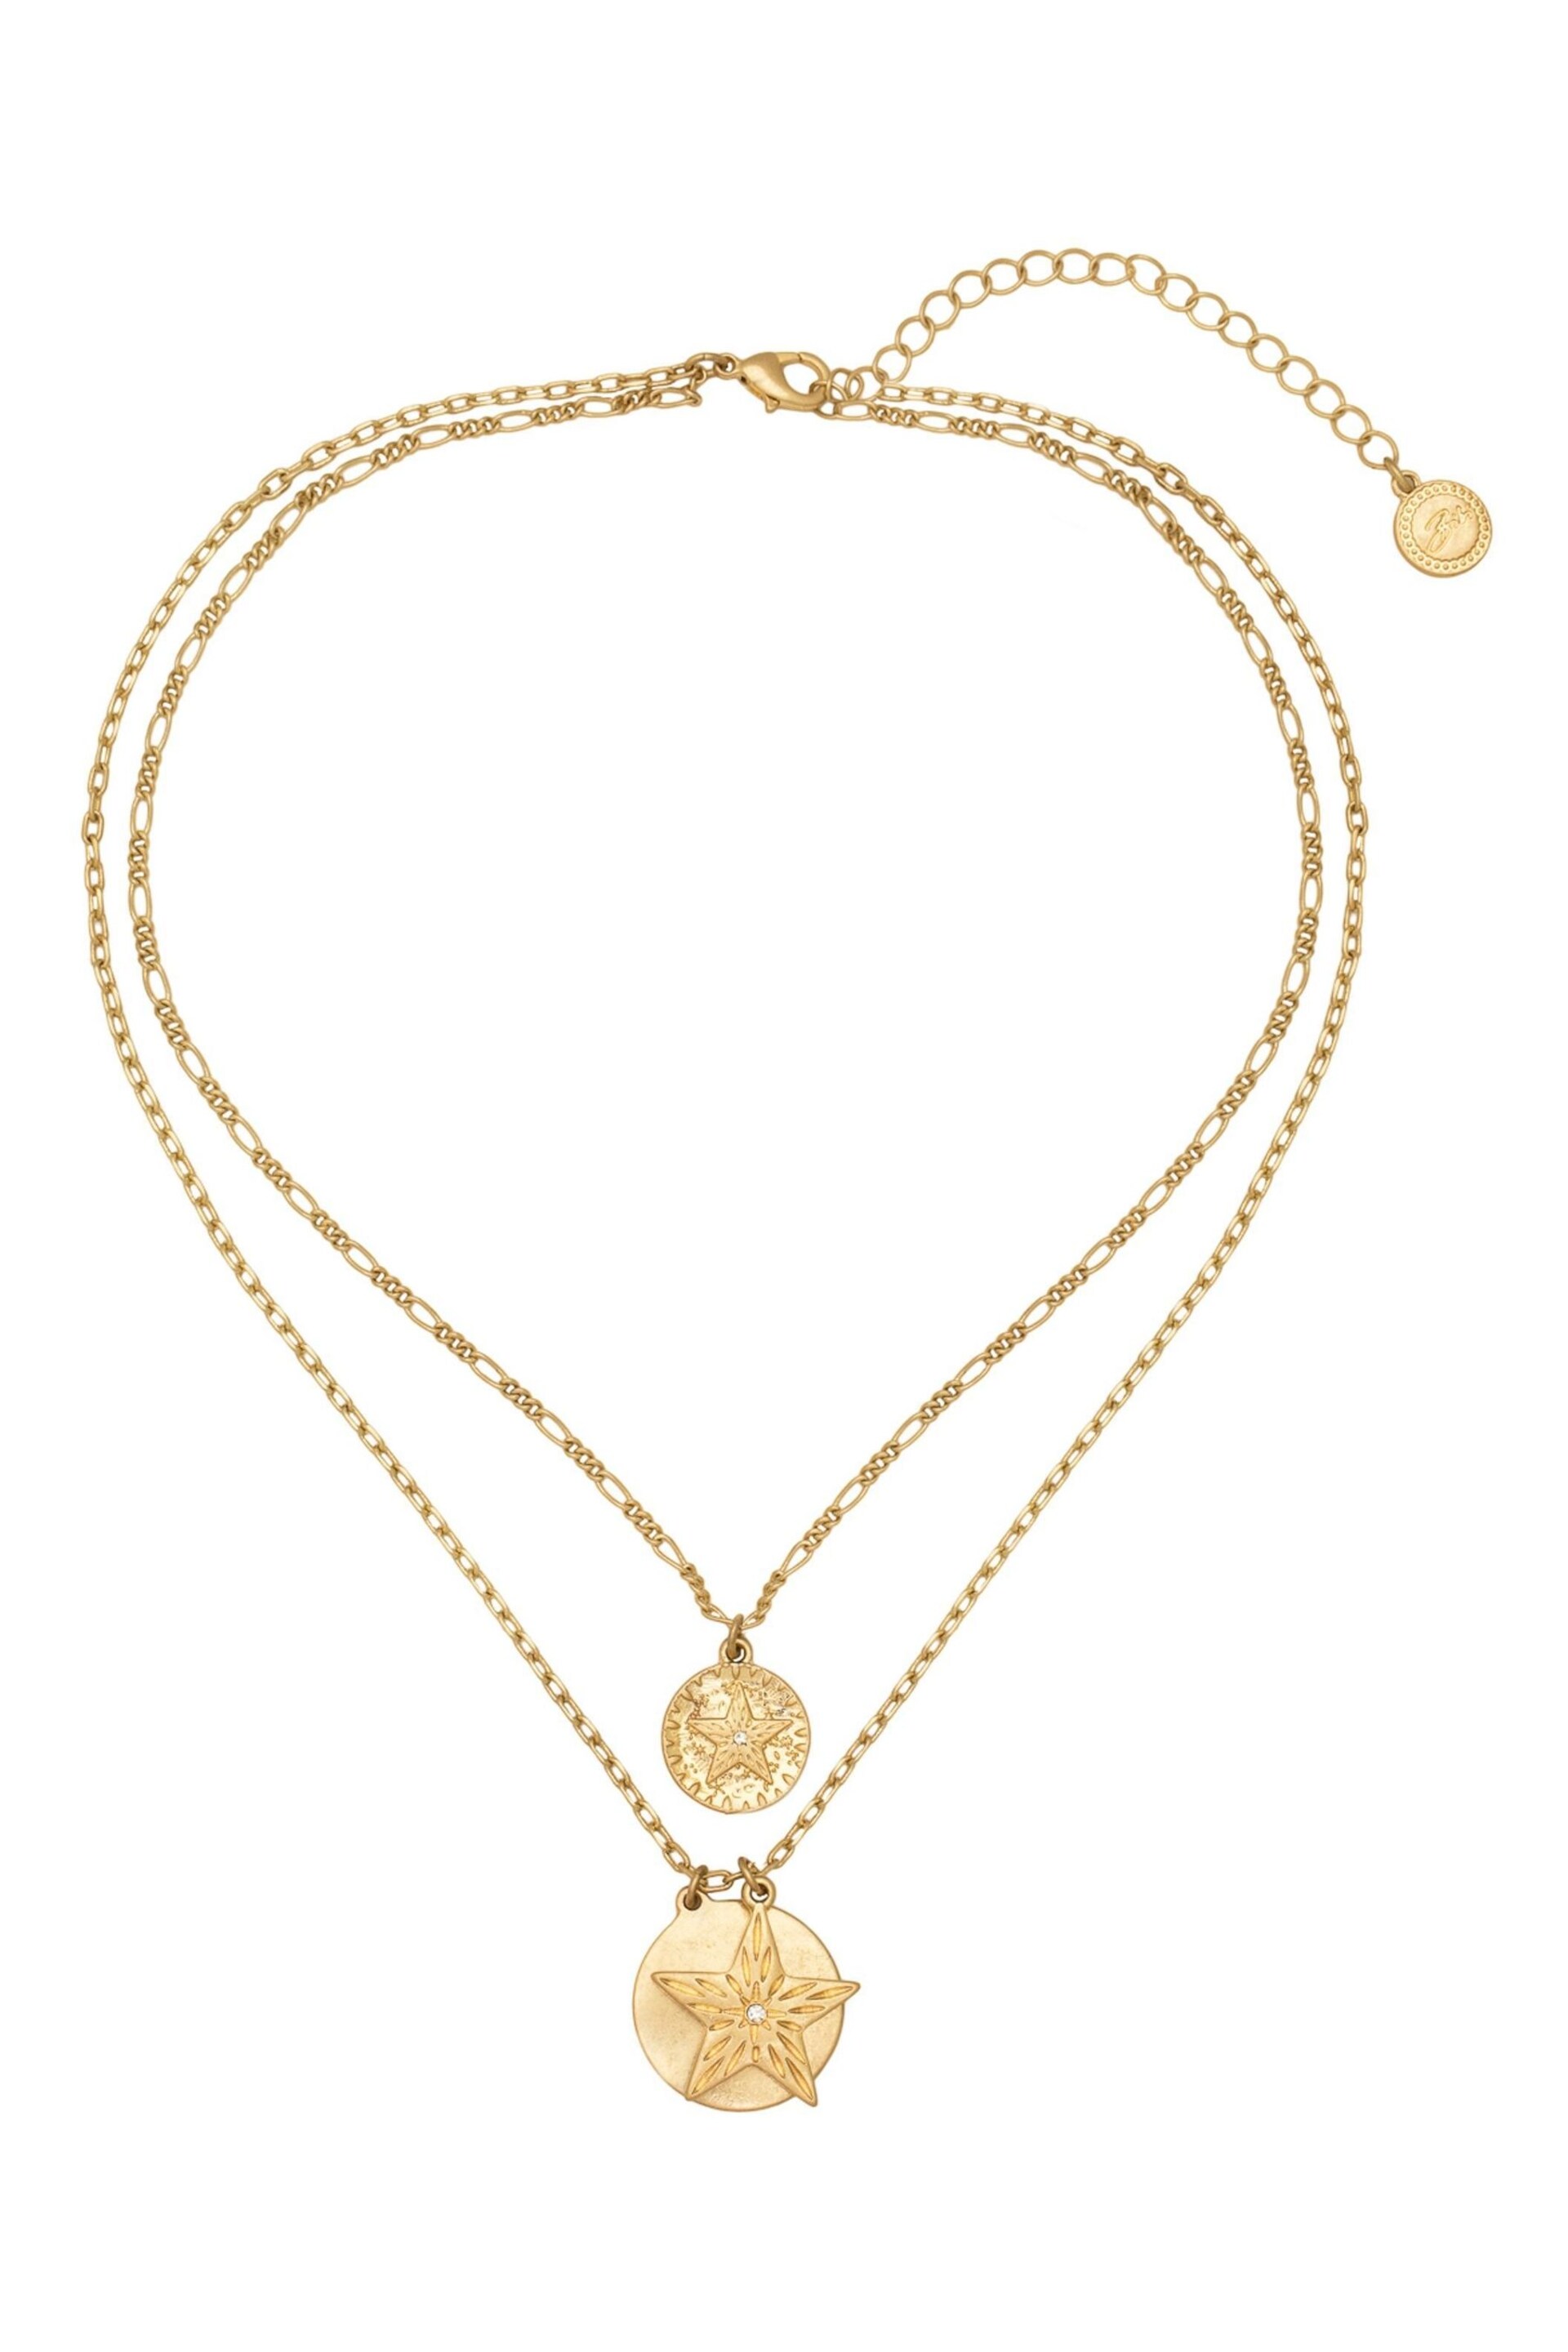 Bibi Bijoux Gold Tone 'Starburst' Layered Necklace - Image 1 of 5